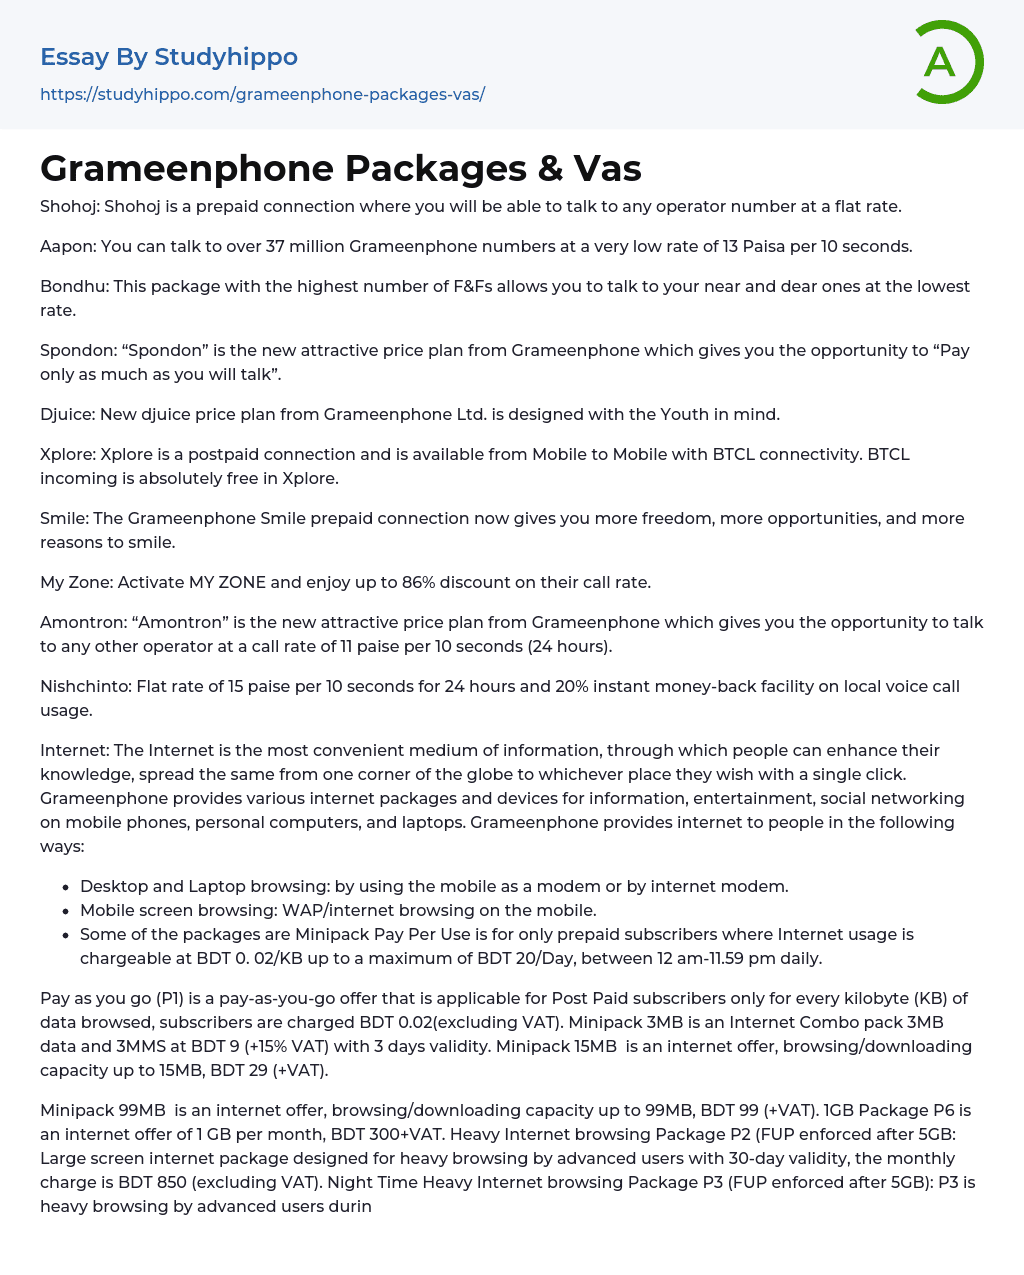 Grameenphone Packages & Vas Essay Example